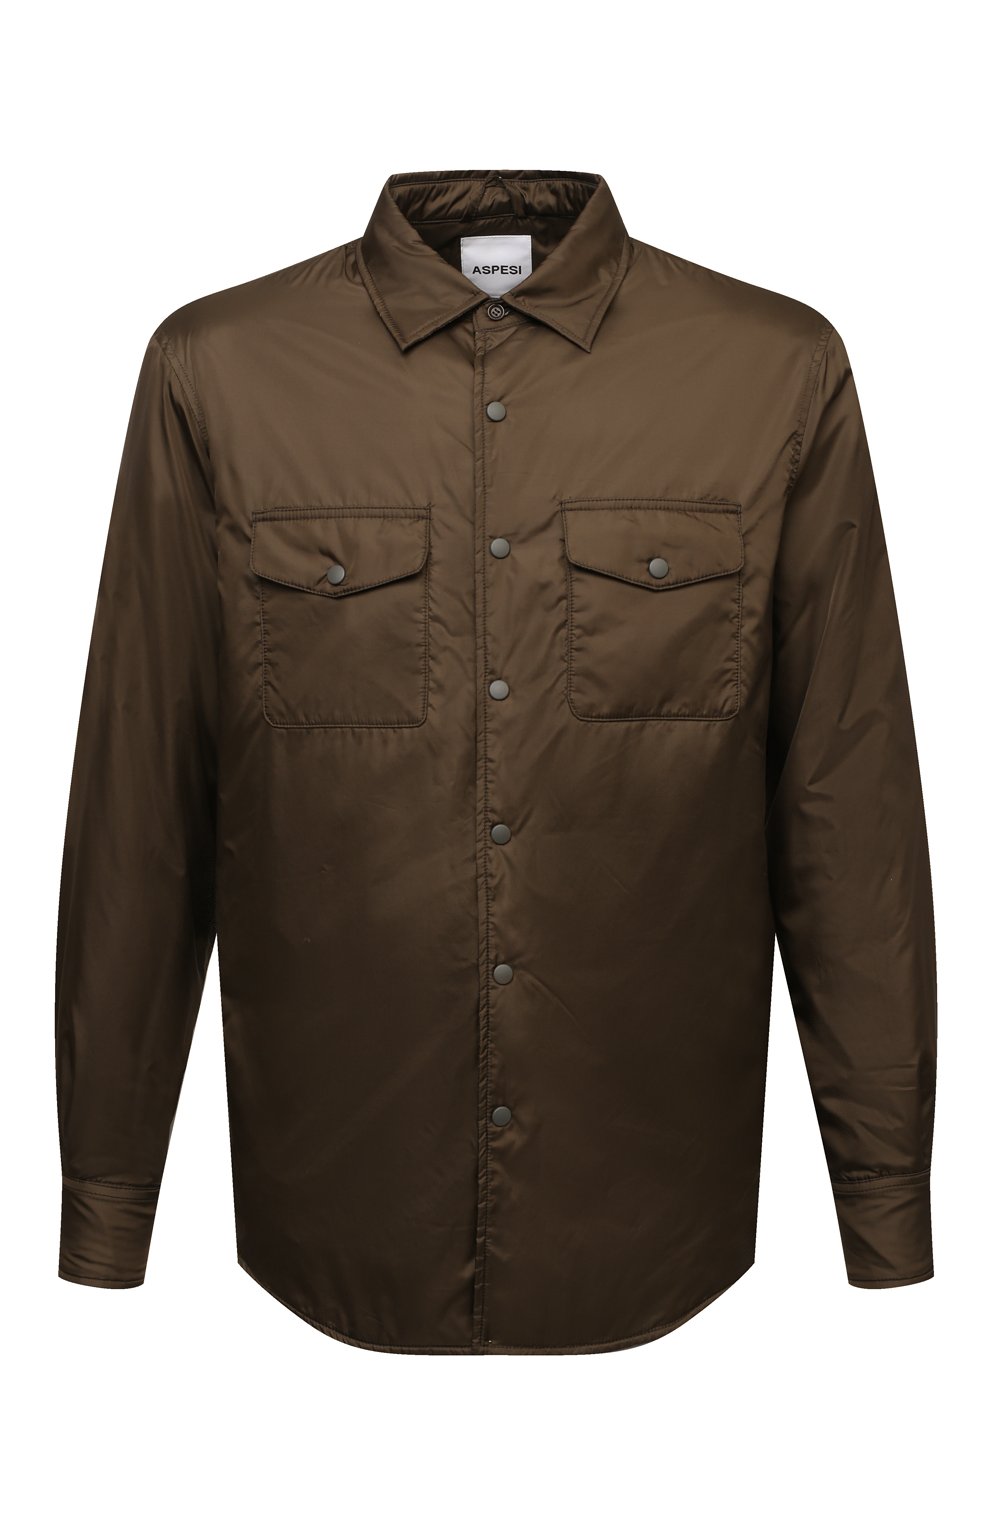 Мужская утепленная куртка-рубашка ASPESI хаки цвета, арт. S2 I I029 7961 | Фото 1 (Кросс-КТ: Куртка; Рукава: Длинные; Материал внешний: Синтетический материал; Мужское Кросс-КТ: утепленные куртки; Стили: Милитари, Кэжуэл; Материал подклада: Синтетический материал; Длина (верхняя одежда): Короткие)